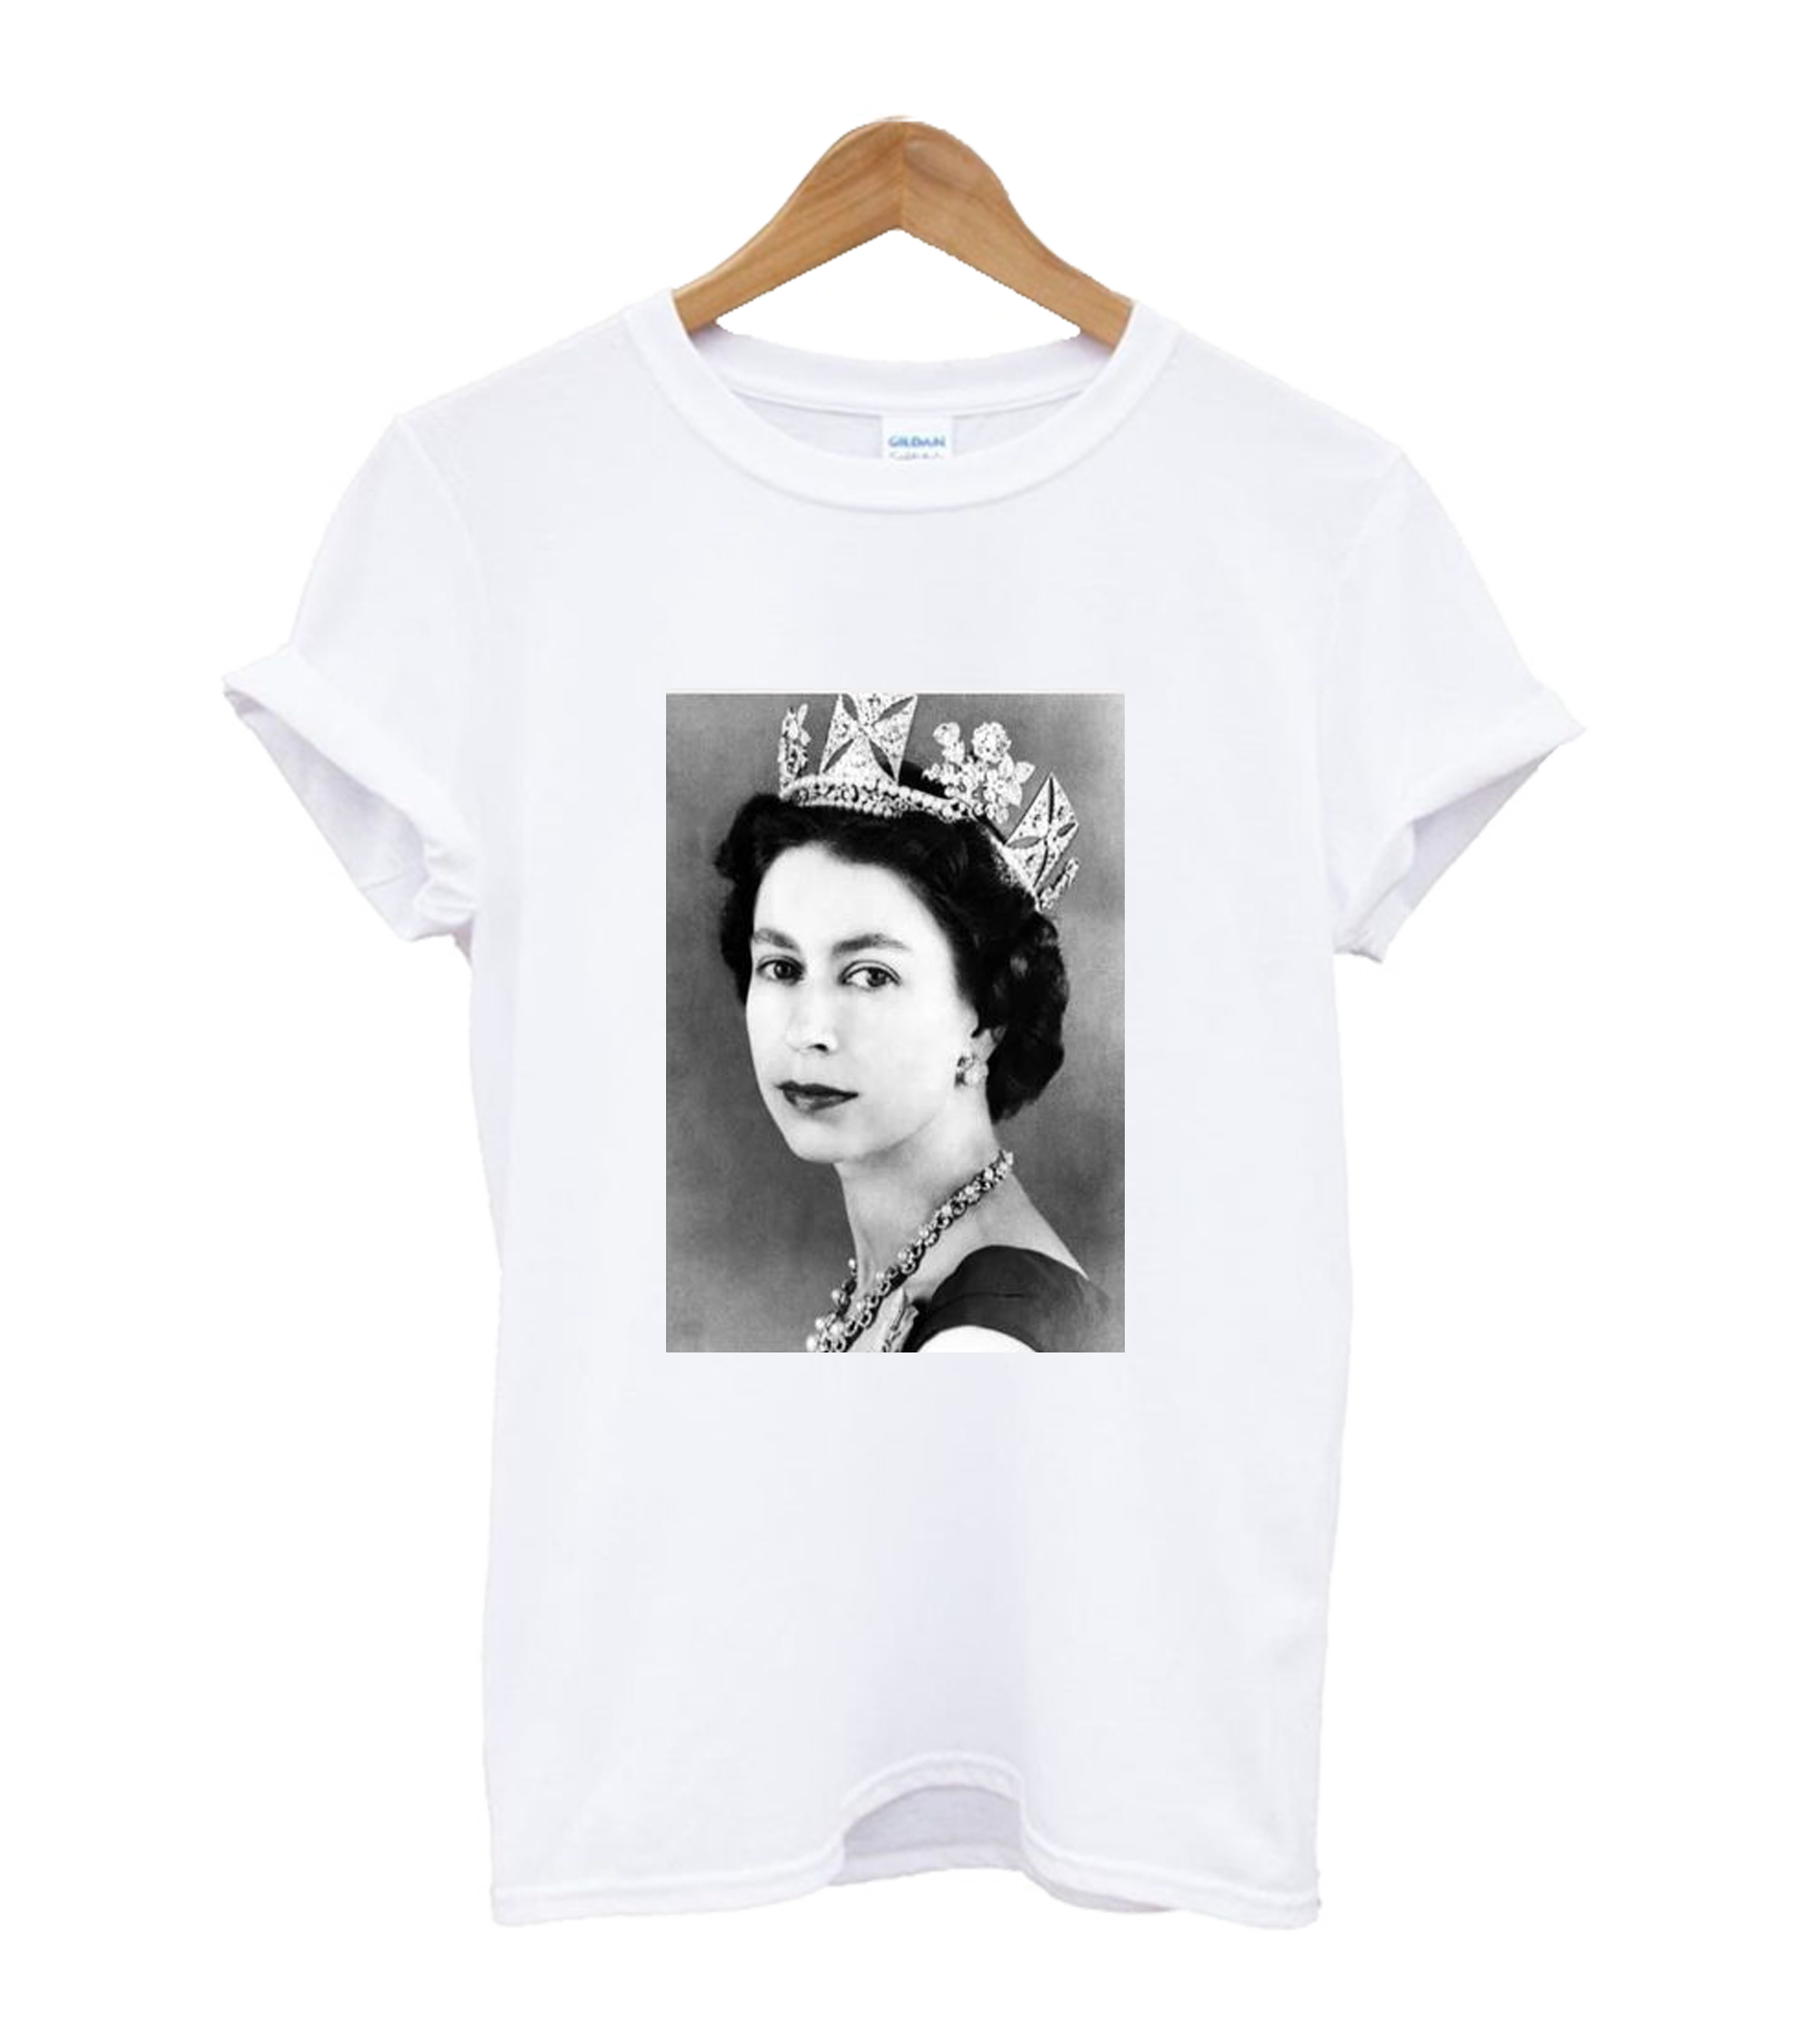 Her Majesty the Queen Elizabeth II T-Shirt